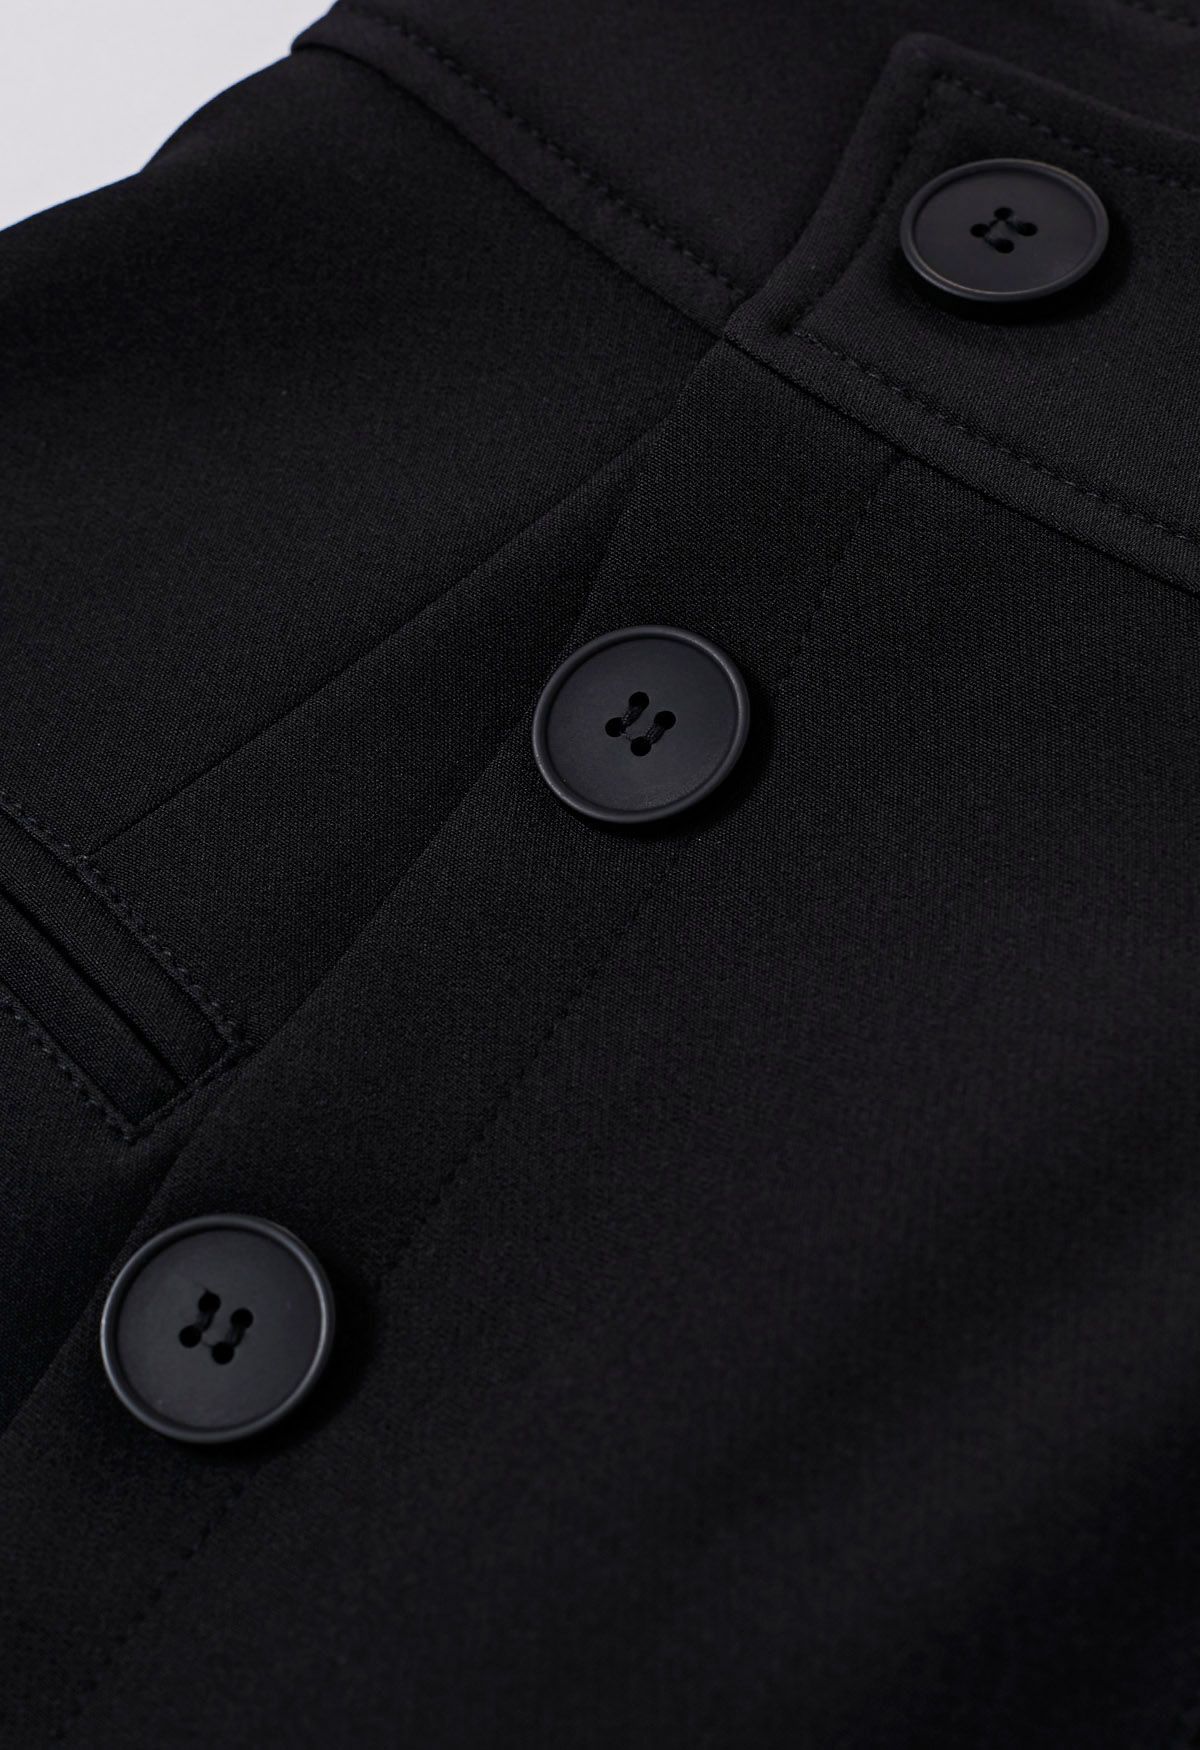 Minifalda asimétrica con solapa y botones en negro